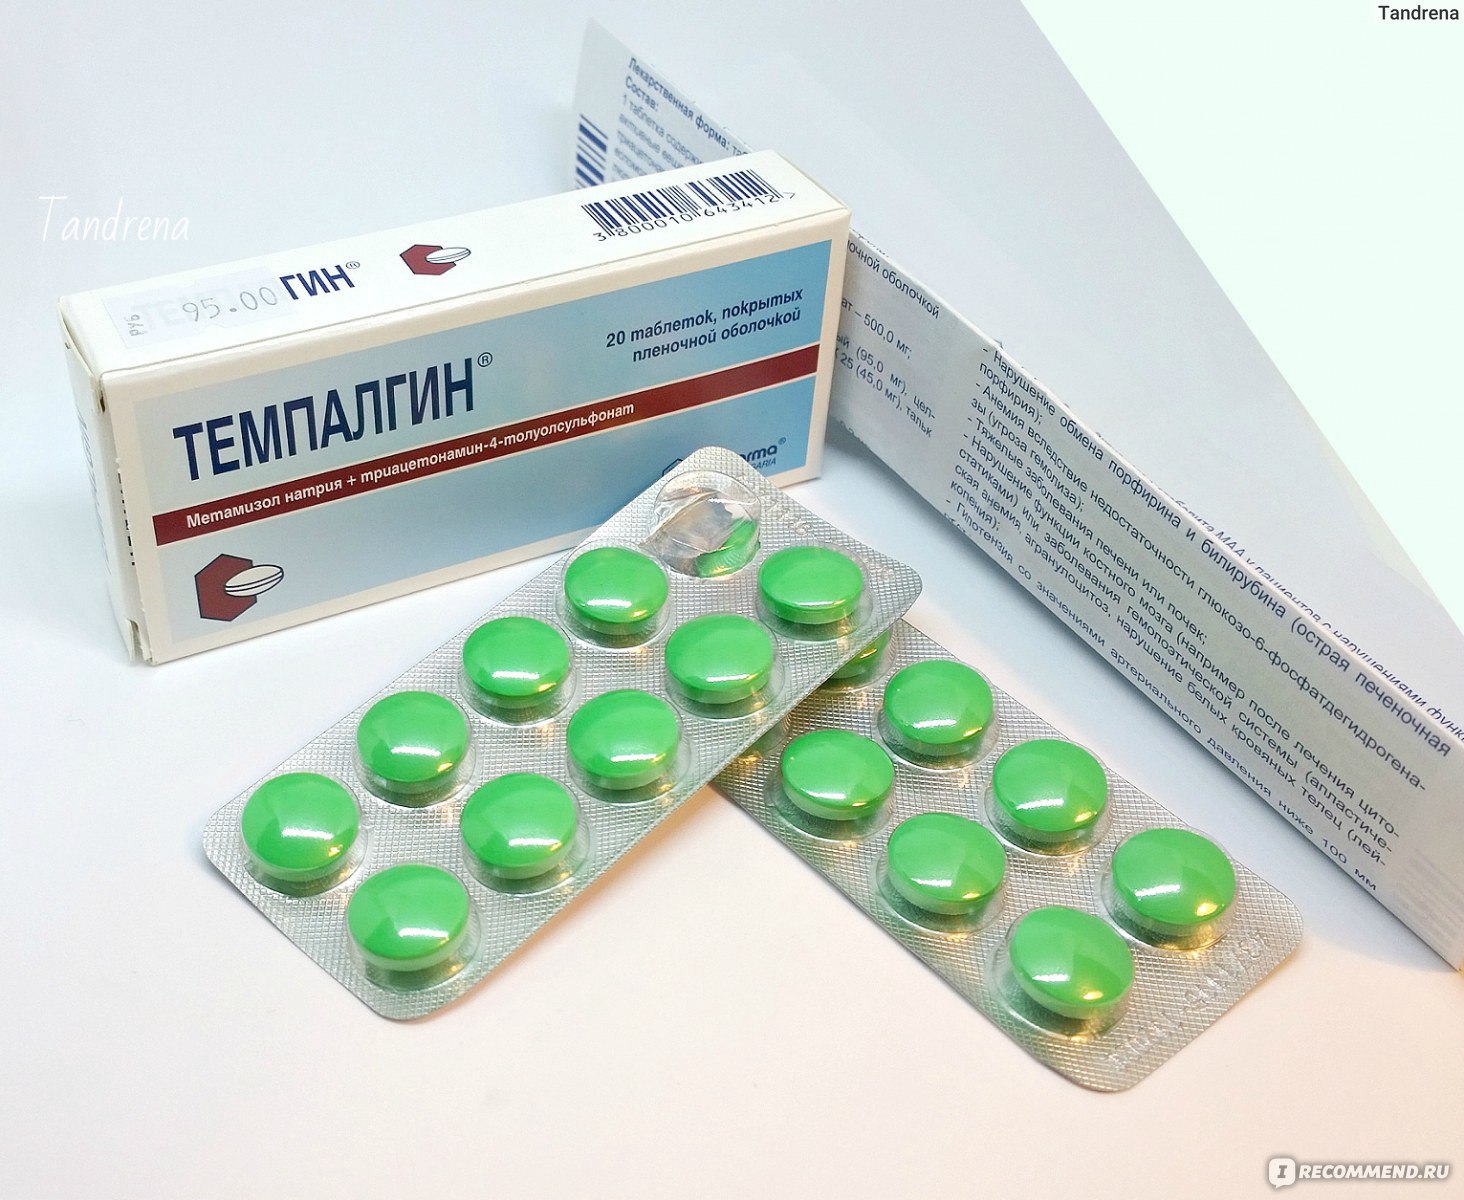 Tempalgin tablete: aplikacija koja pomaže